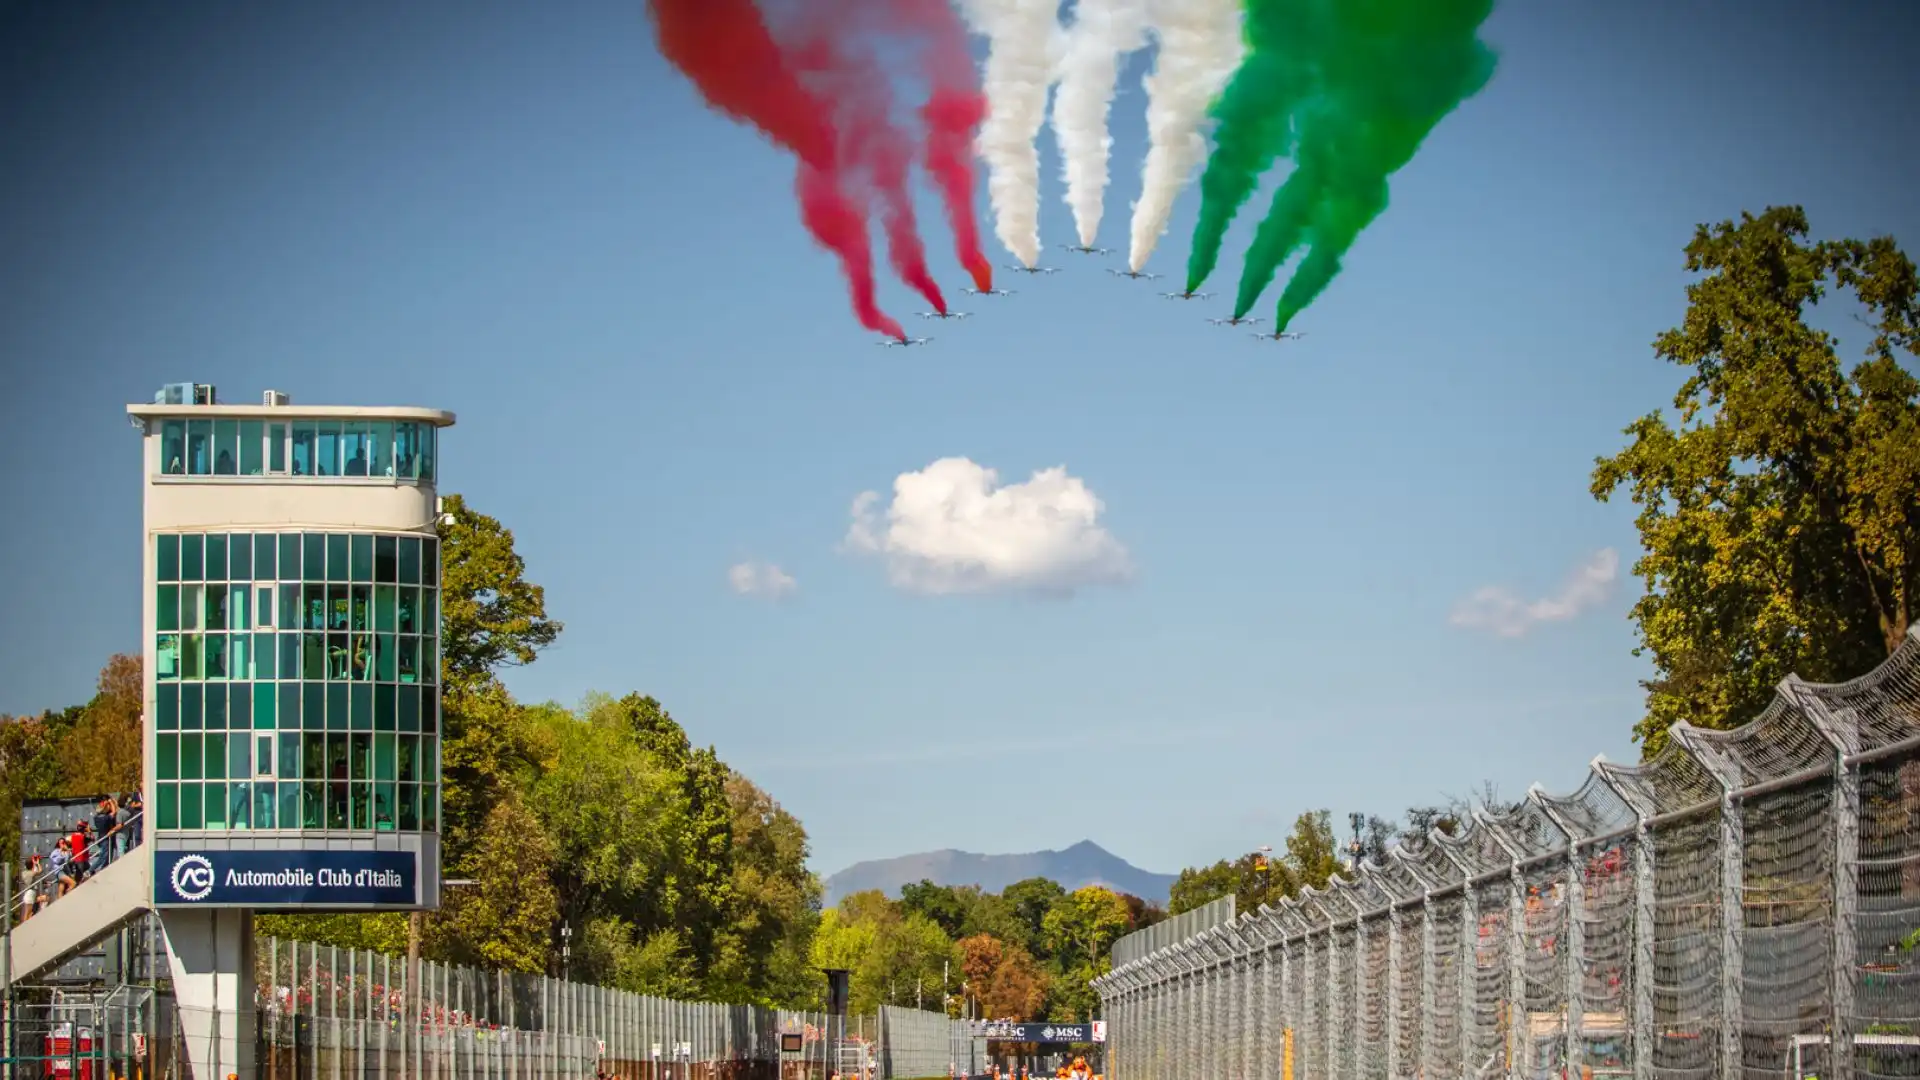 L'inno di Mameli è stato cantato da Andrea Bocelli, mentre le Frecce Tricolori coloravano i cieli di Monza. Foto di Cristian Lovati